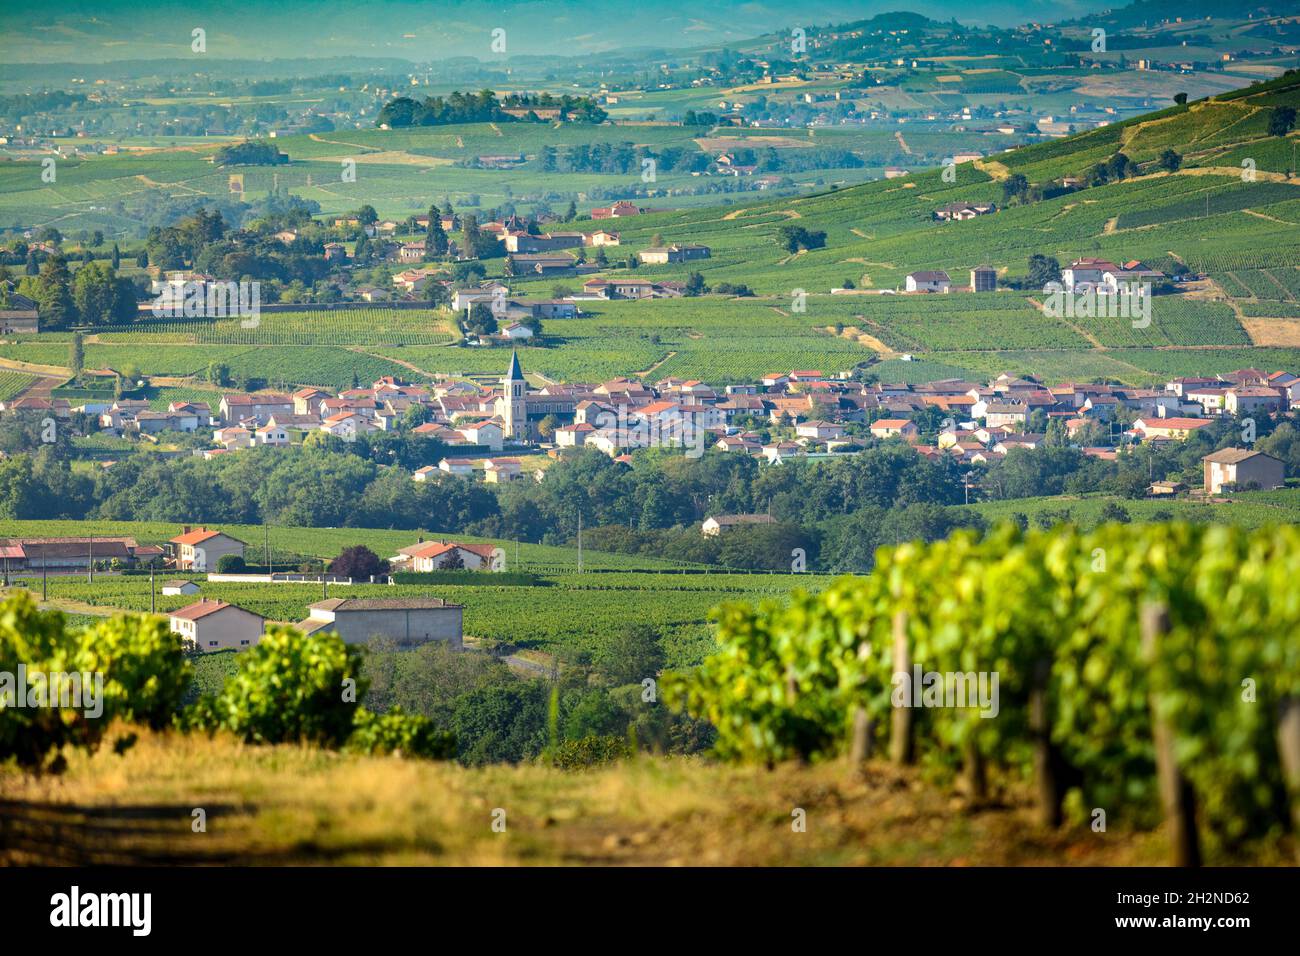 Village de Cercié, Beaujolais, France Stock Photo